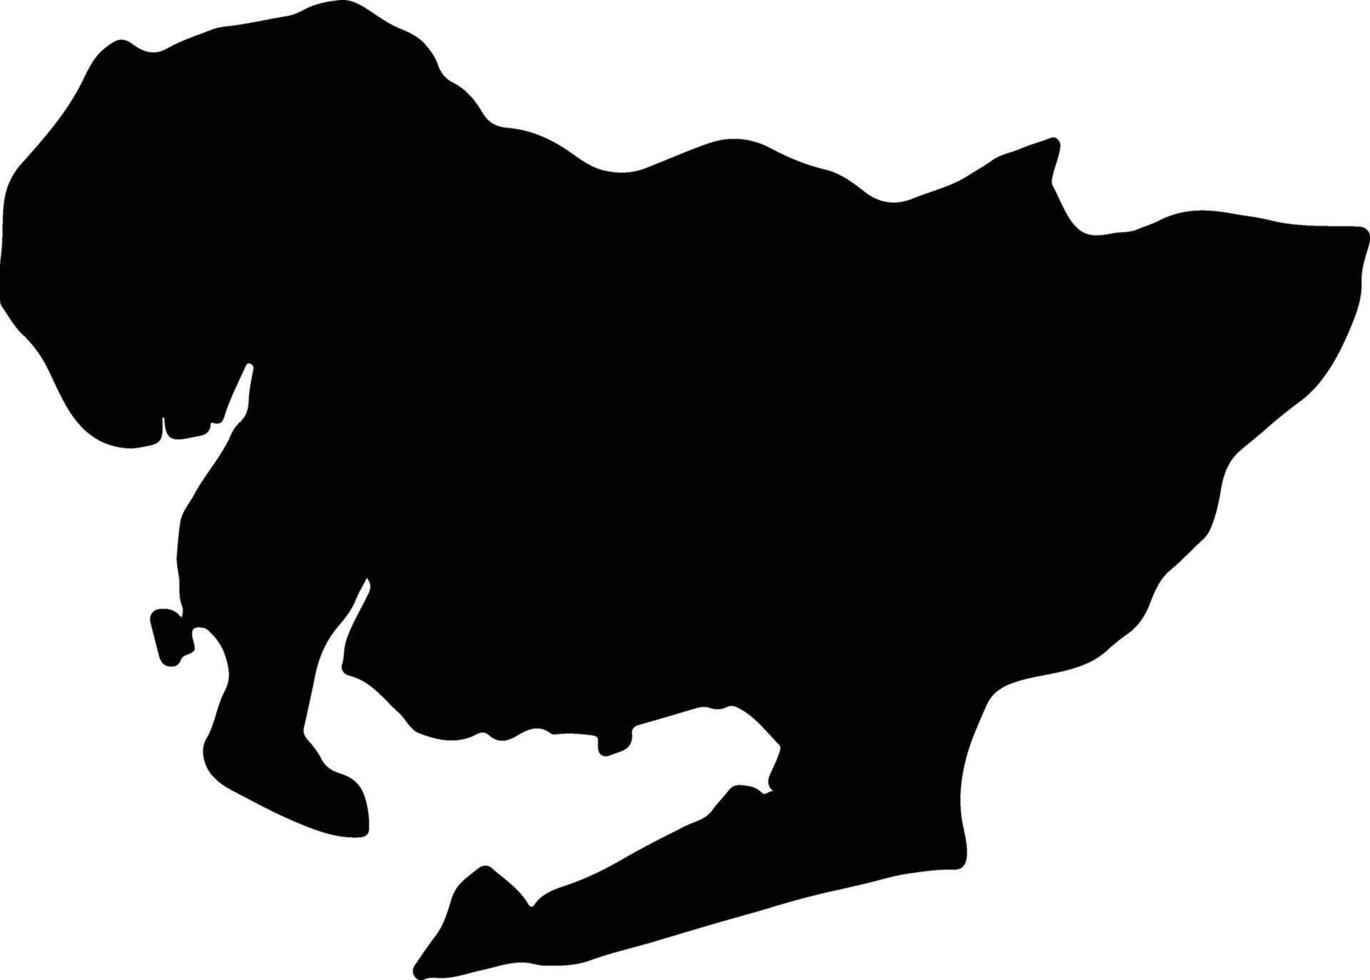 Aichi Japan silhouette map vector